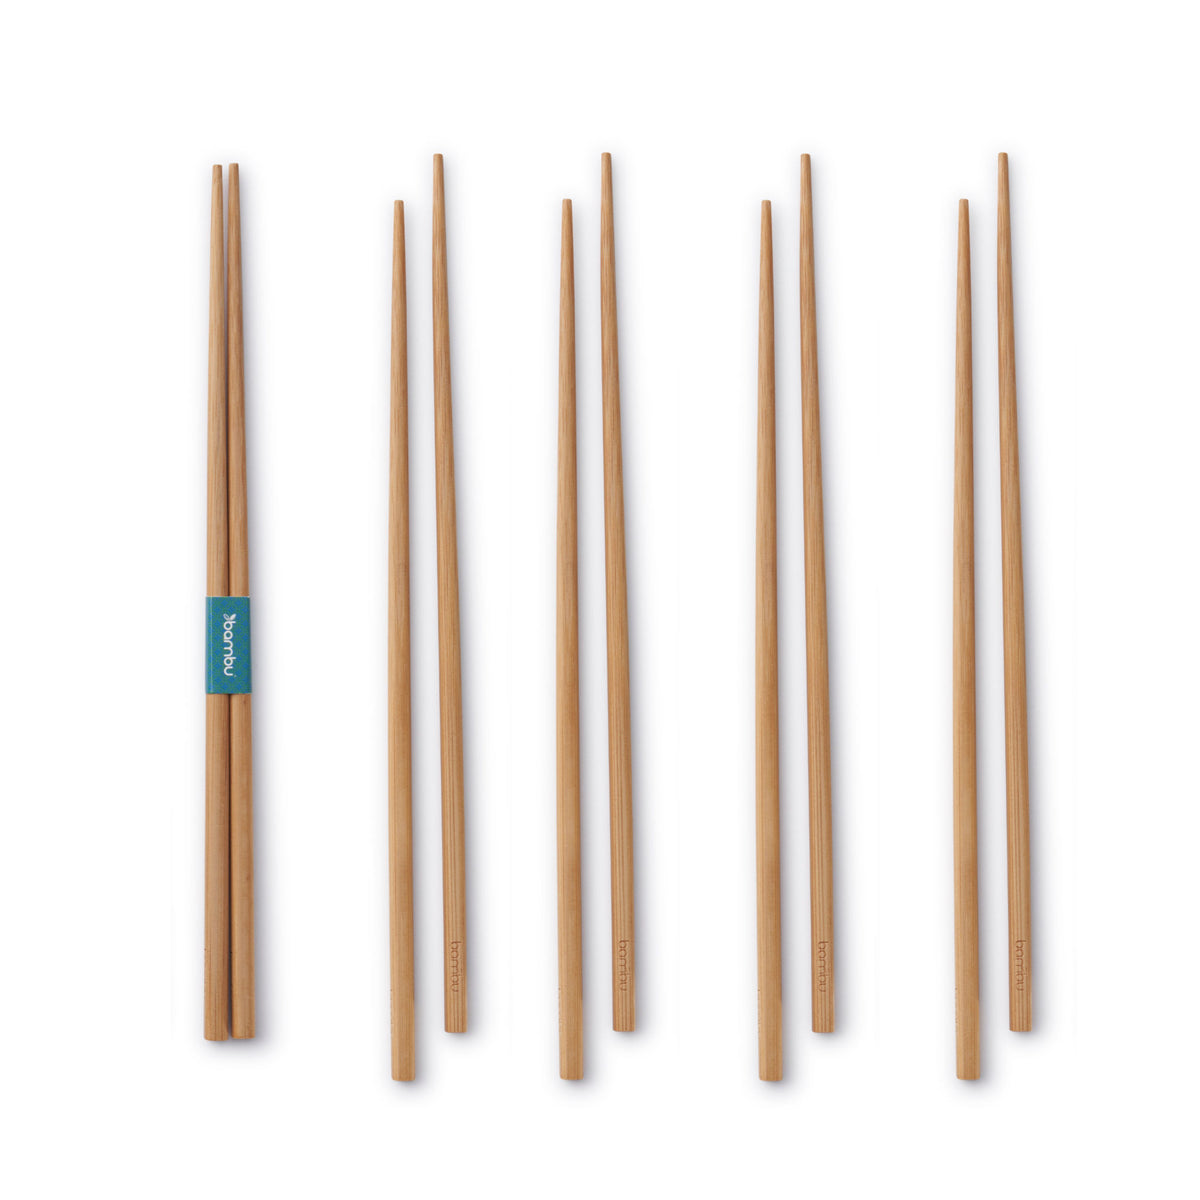 Bamboo Chopsticks, 5 Sets